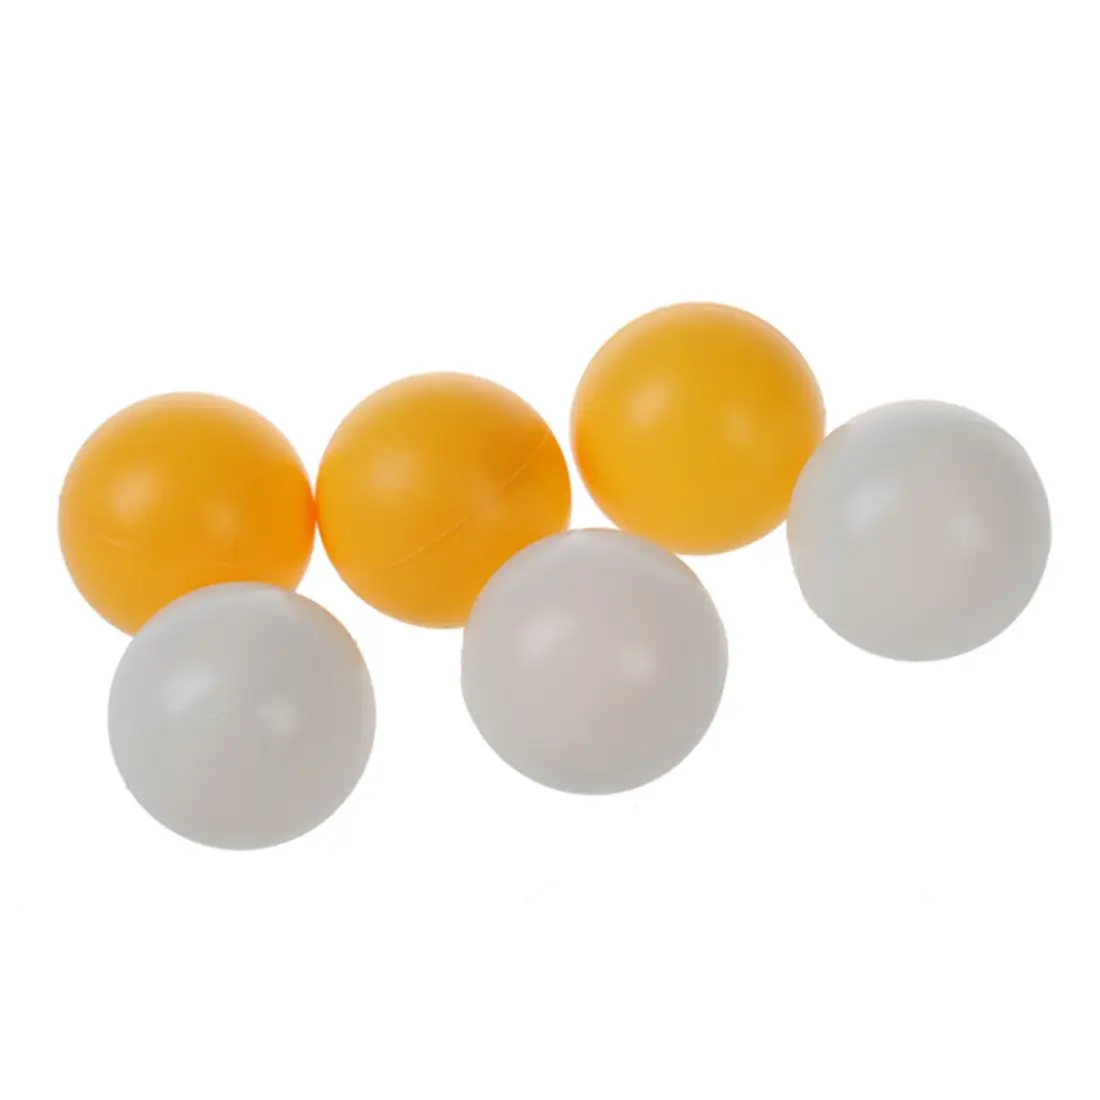 Белый желтый 39 мм Диаметр спортивные мячи для настольного тенниса мячик для Пинг-Понга 6 шт